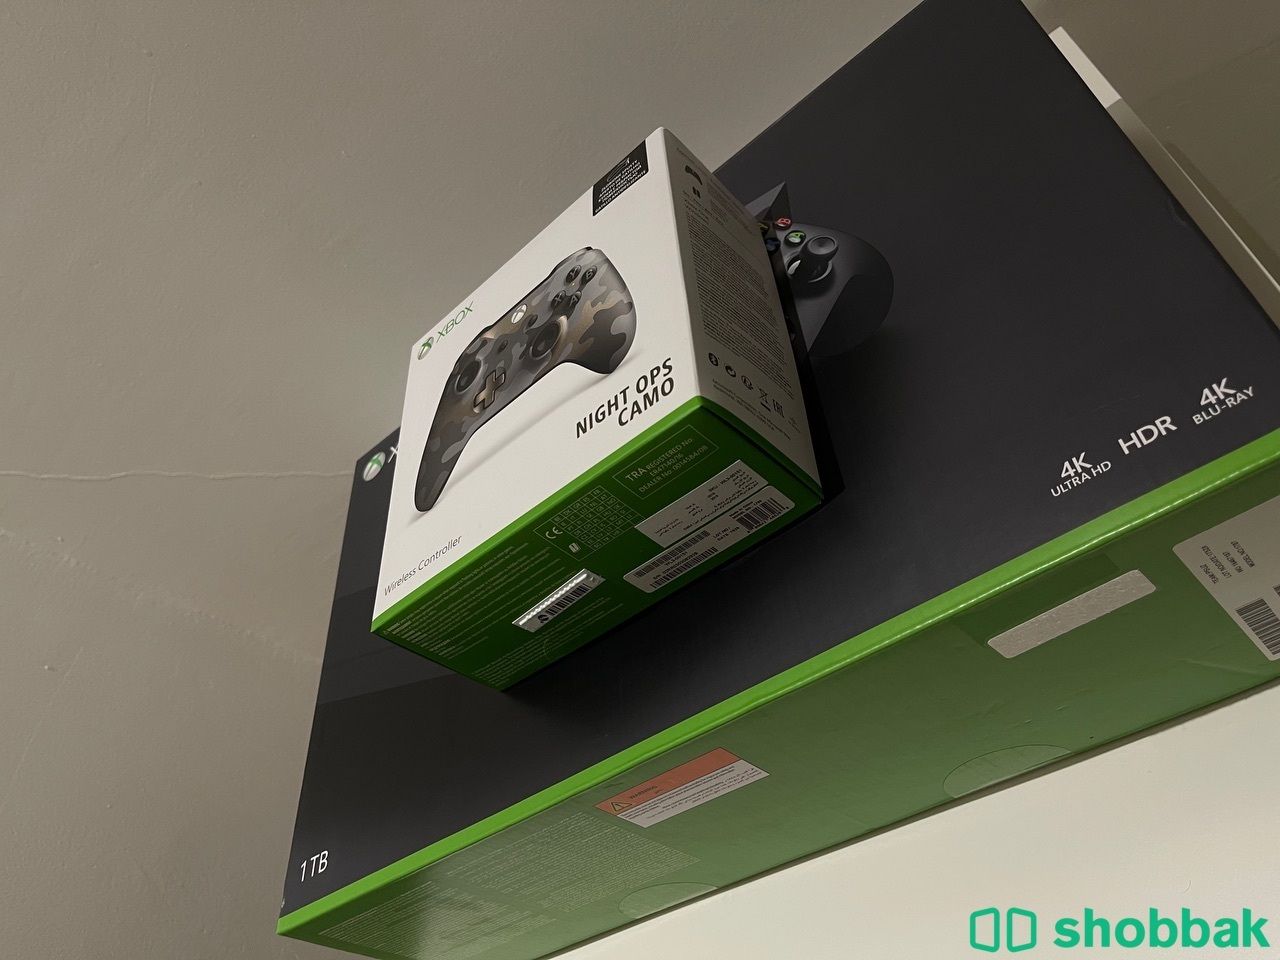  اكس بوكس Xbox one X  شباك السعودية